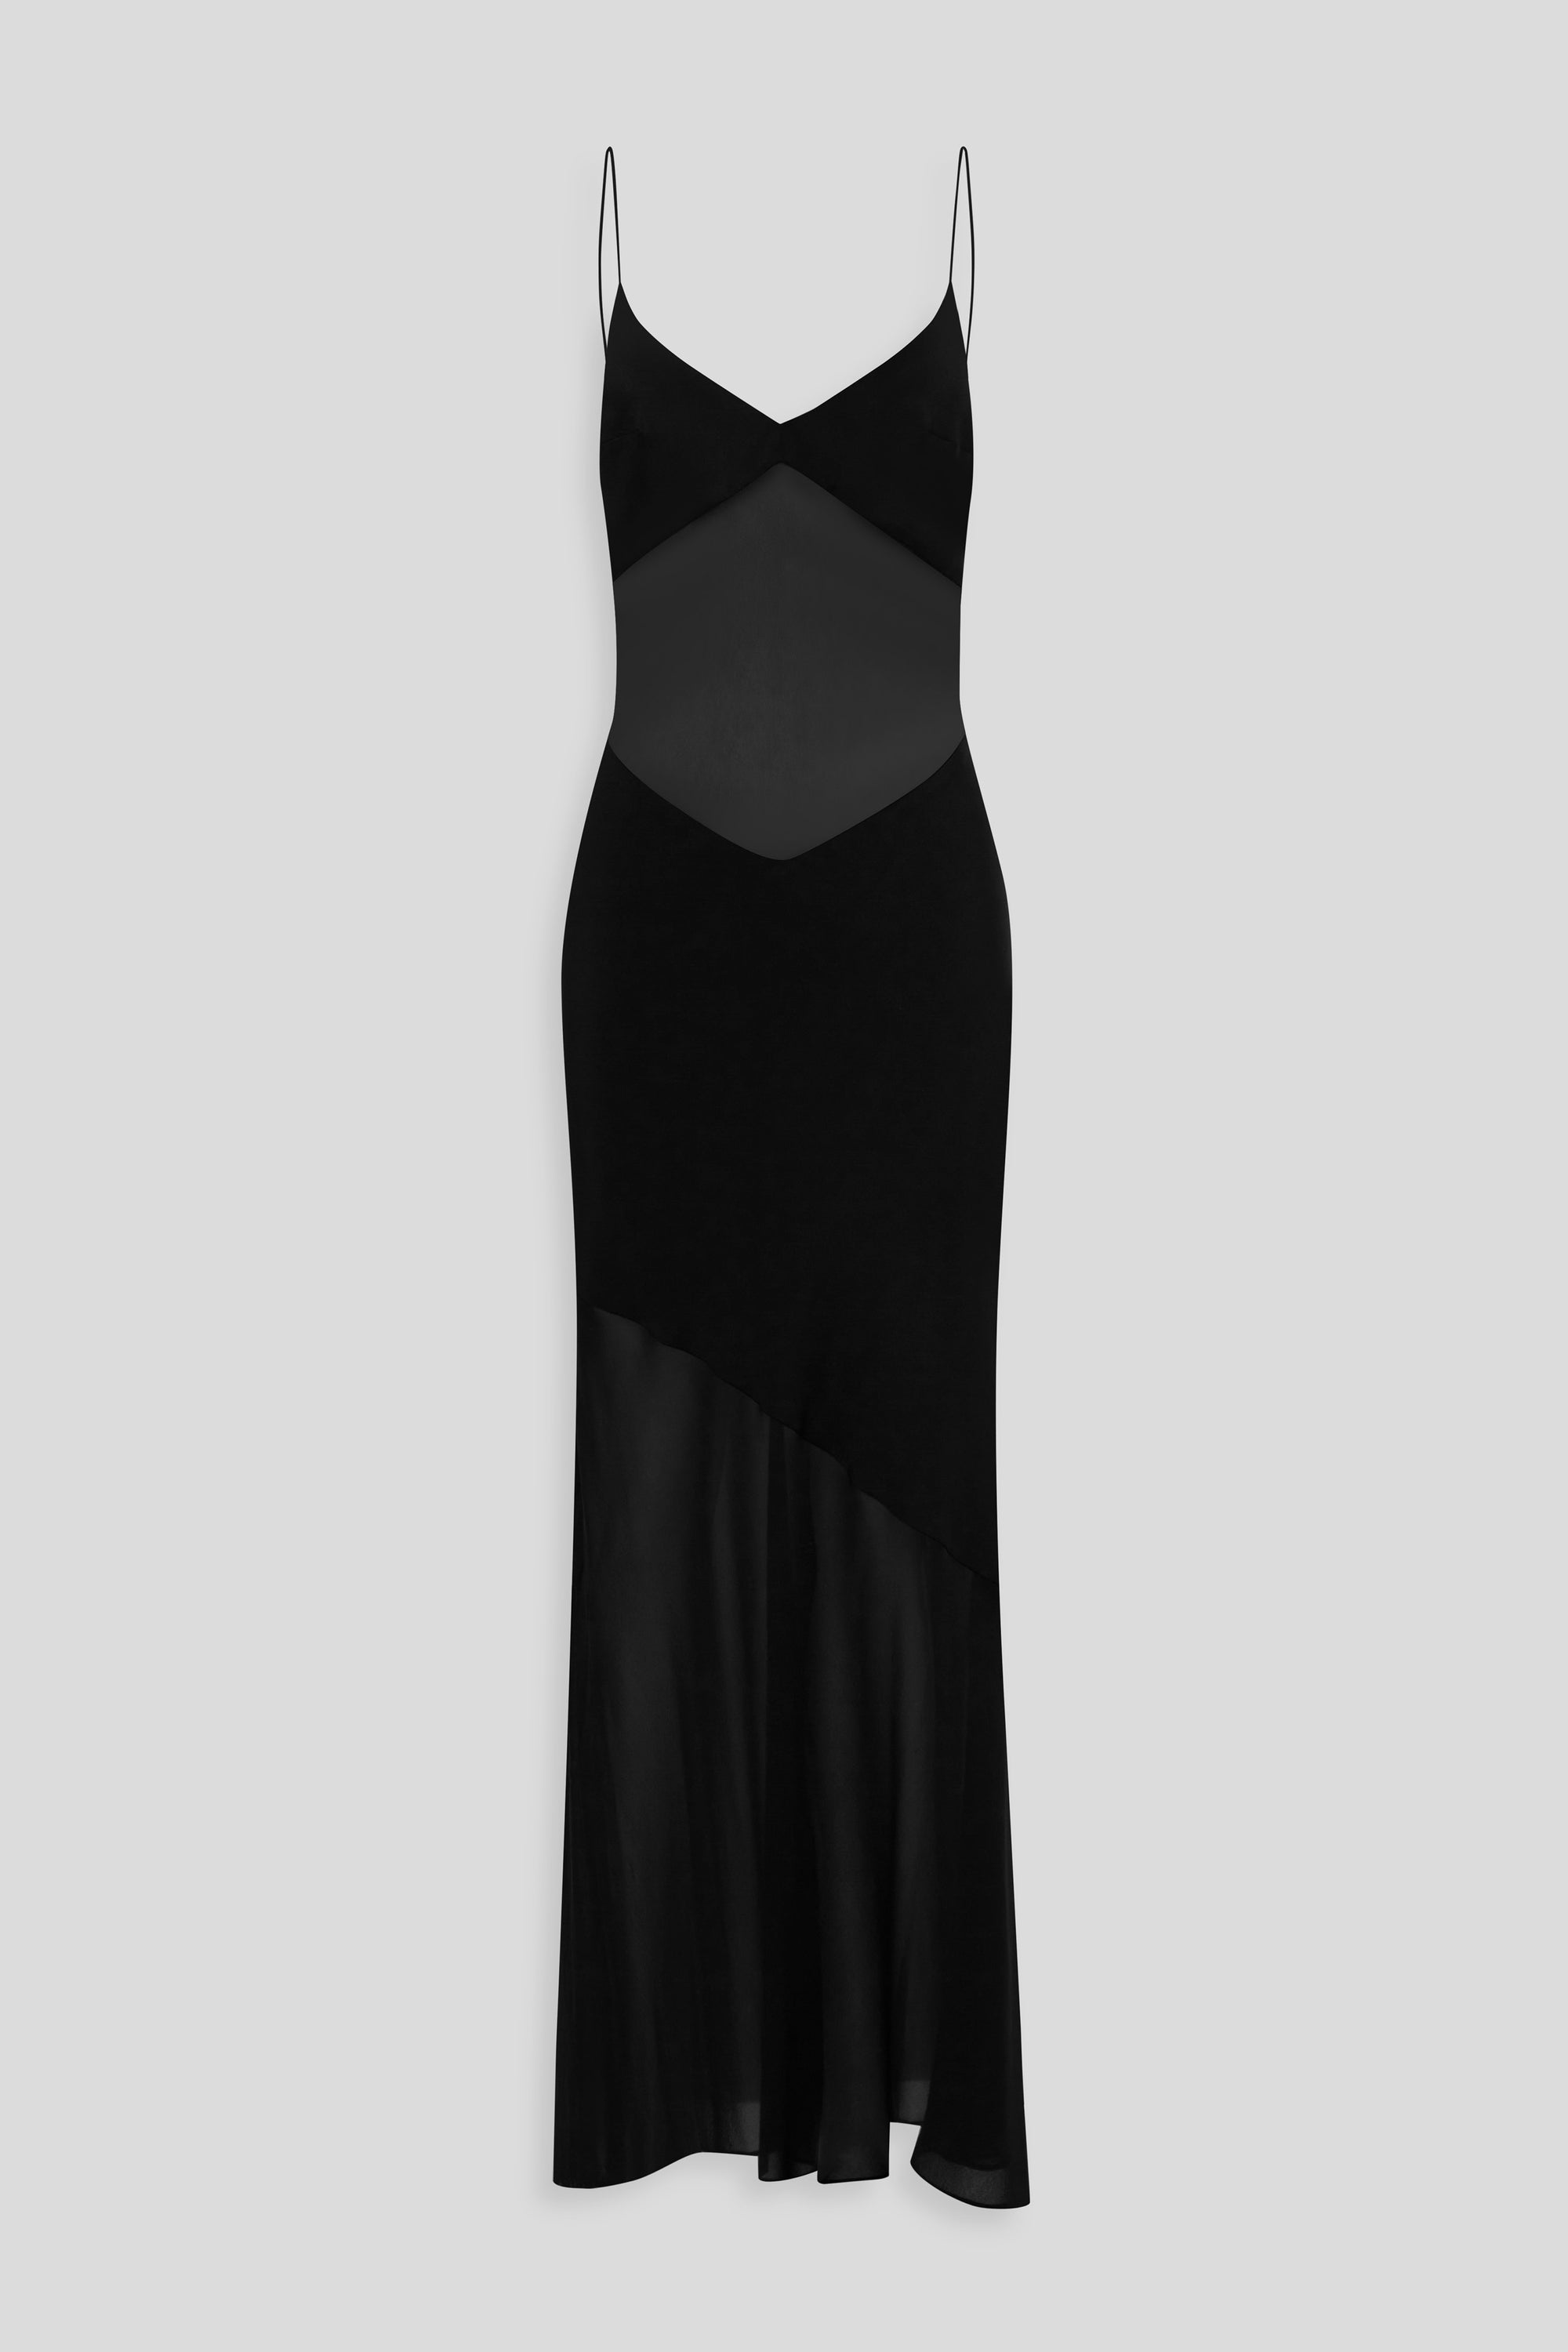 Venroy - Womens Womens Sheer Panelled Silk Slip Dress in Black | Venroy ...